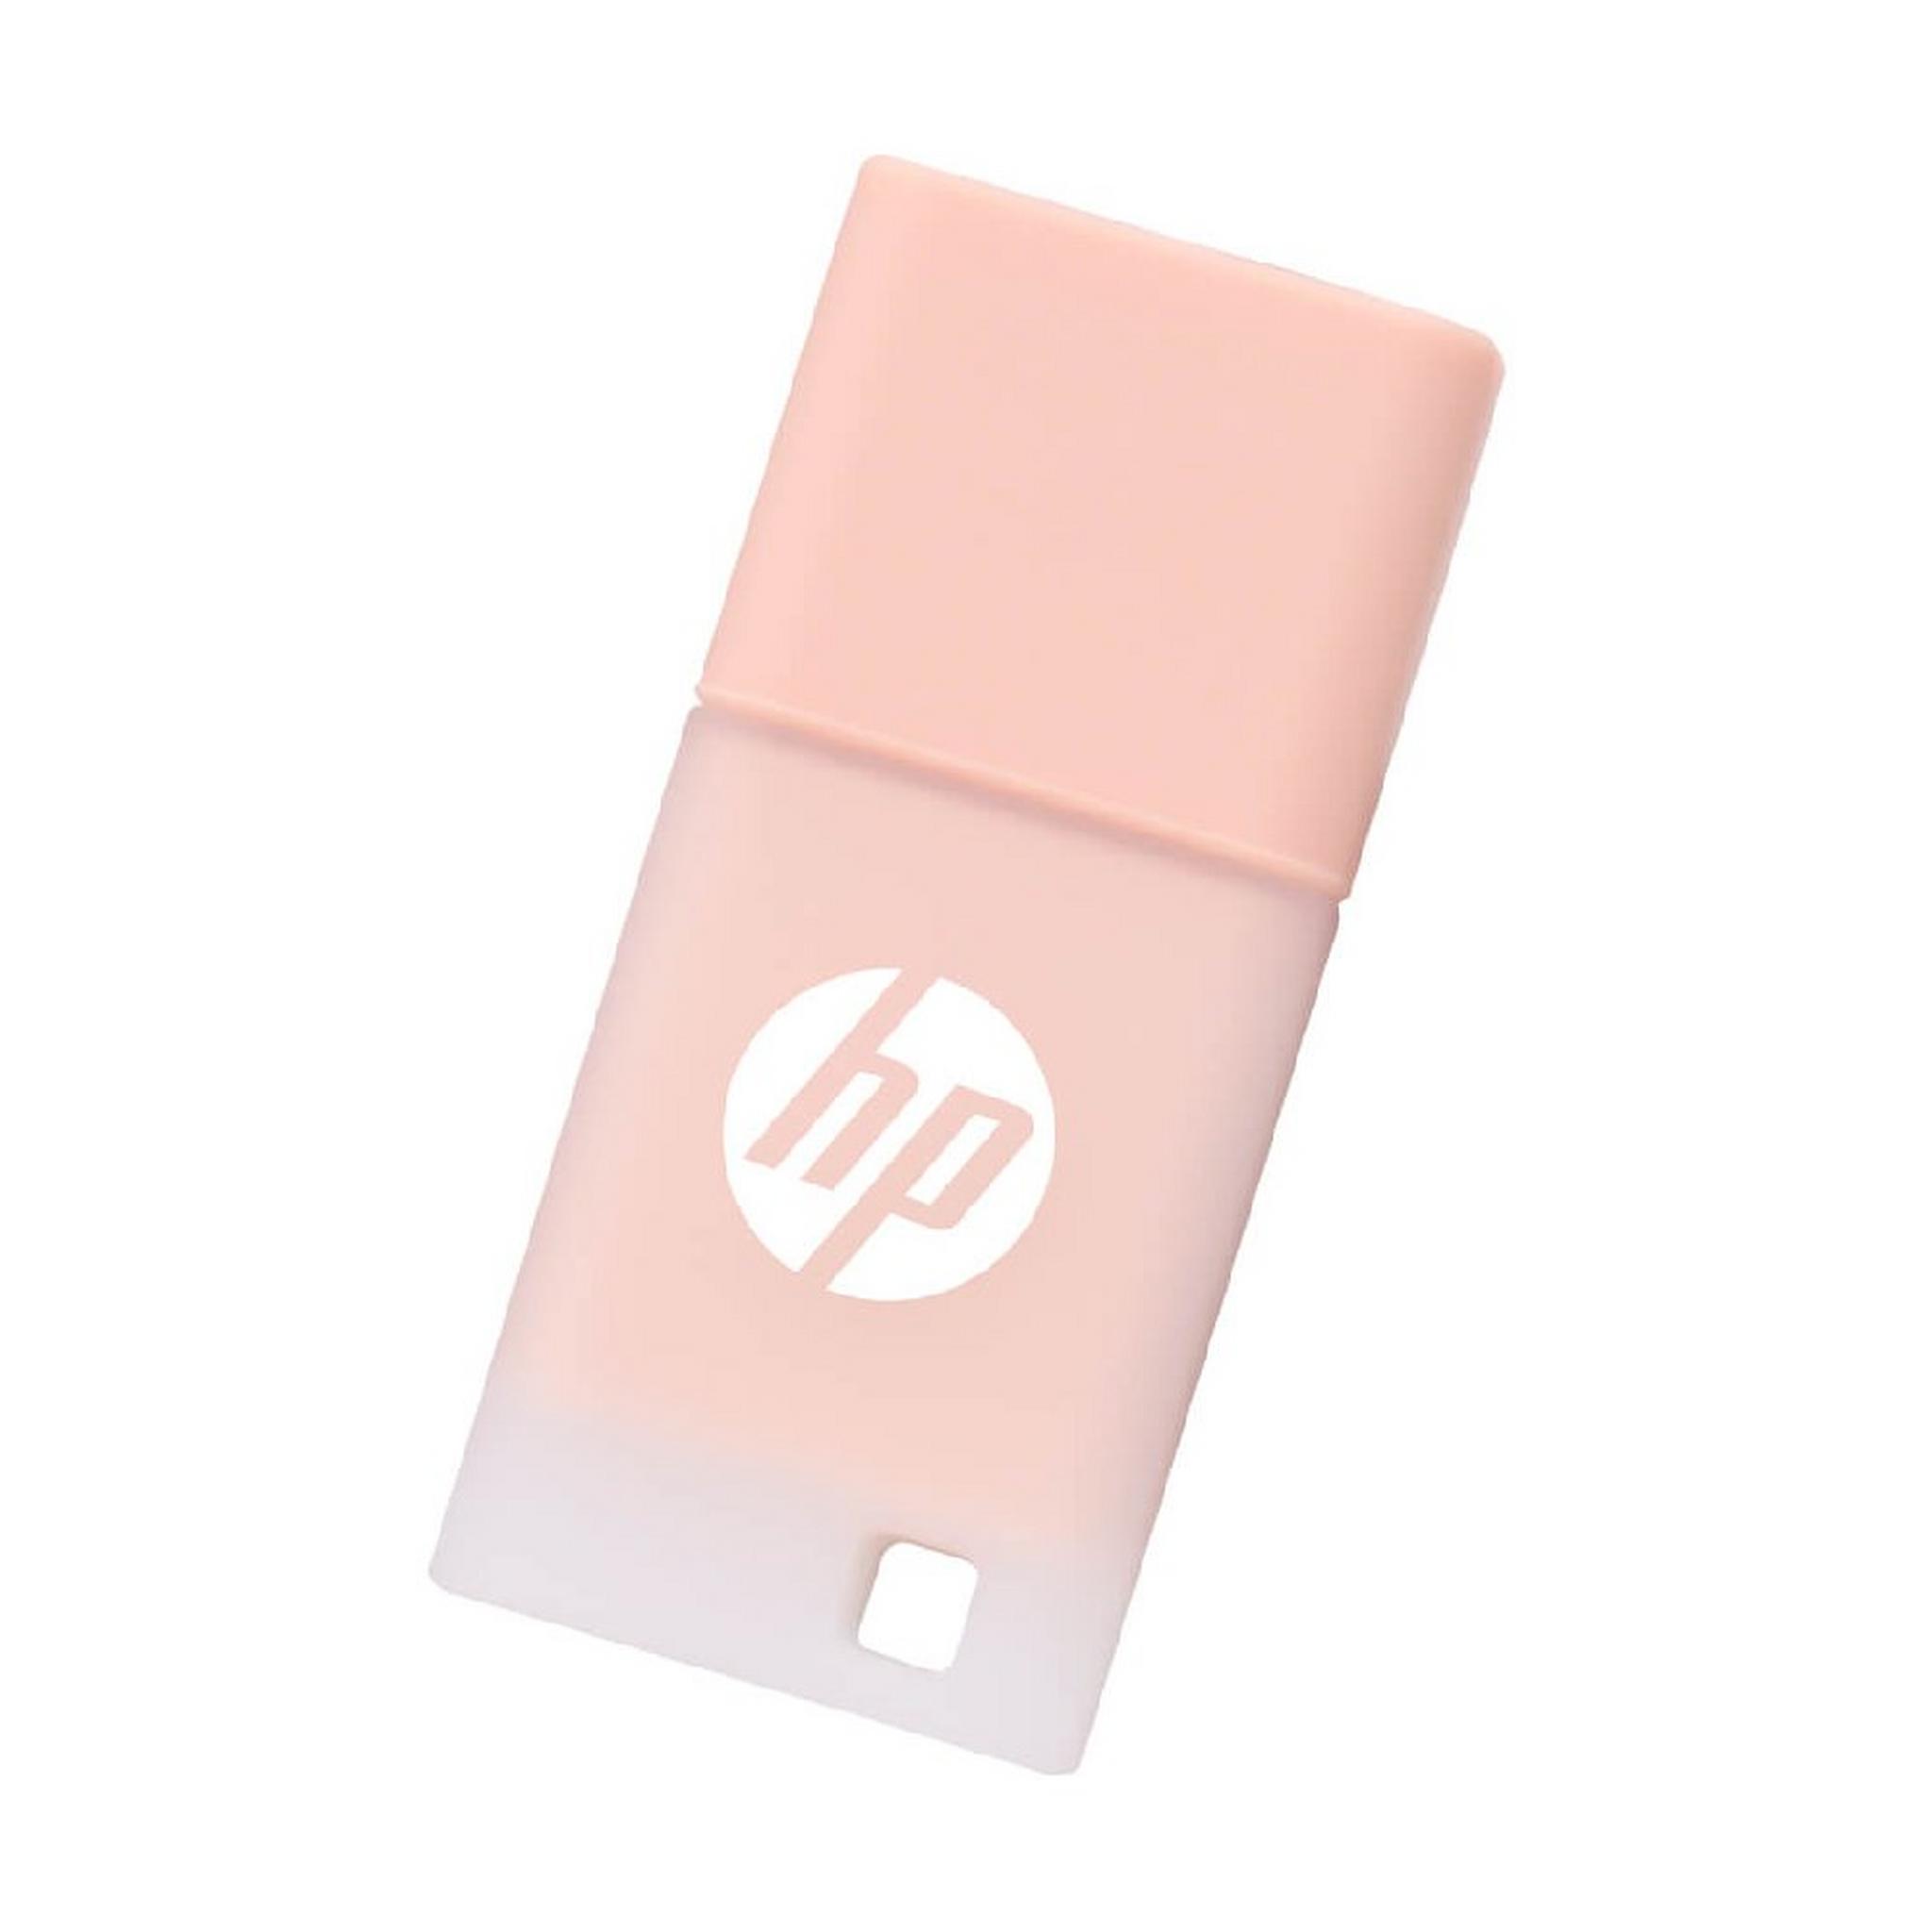 HP x768 USB 3.2 Flash Drive, 32 GB, HPFD768K-32 - Beige Rose